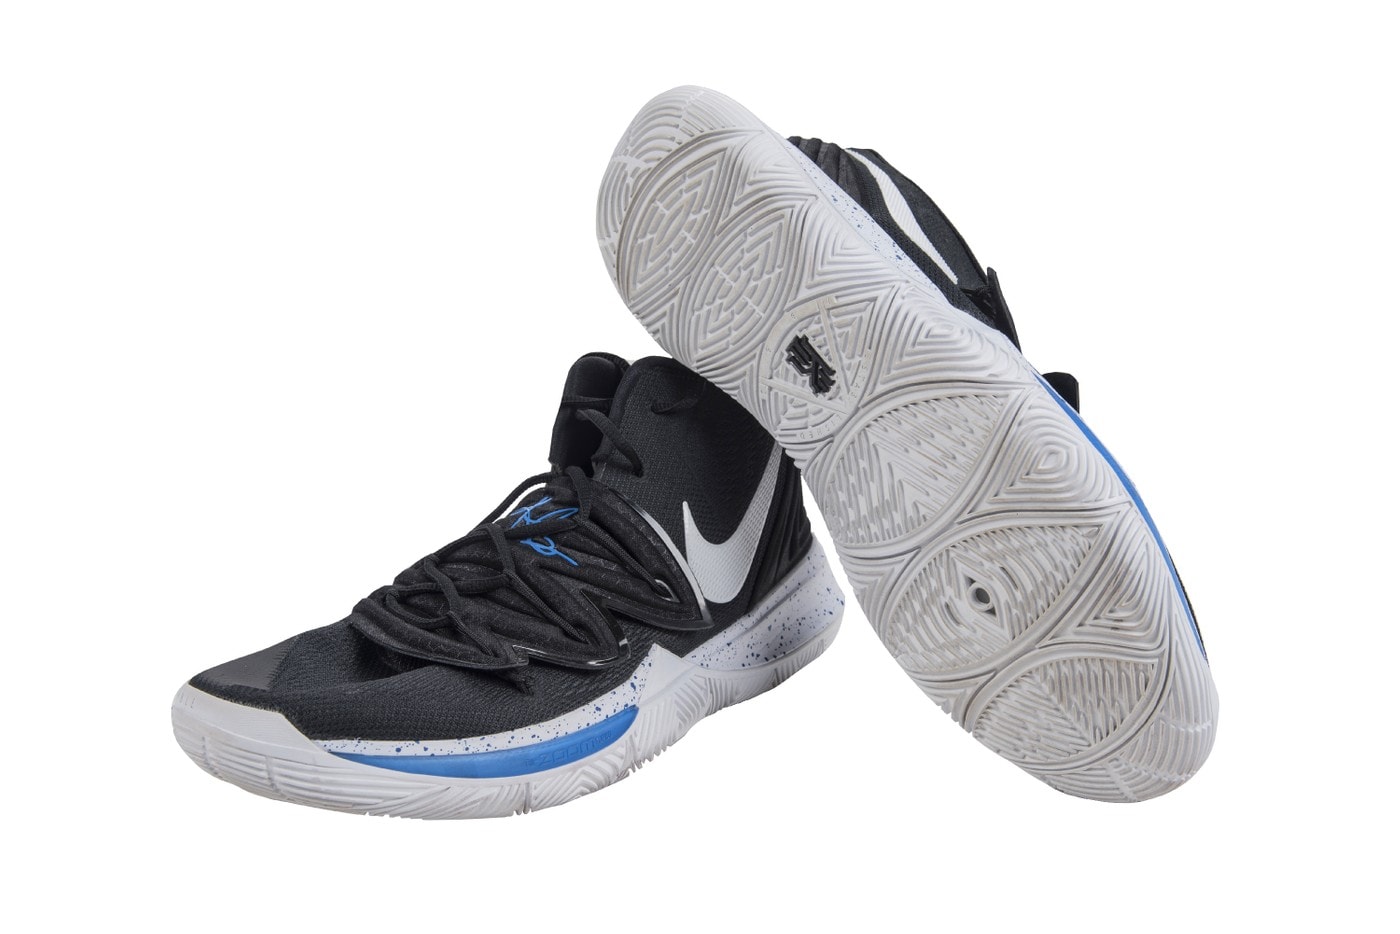 狀元加持 − Zion Williamson 著用 Nike Kyrie 5 拍賣近 $20,000 美元